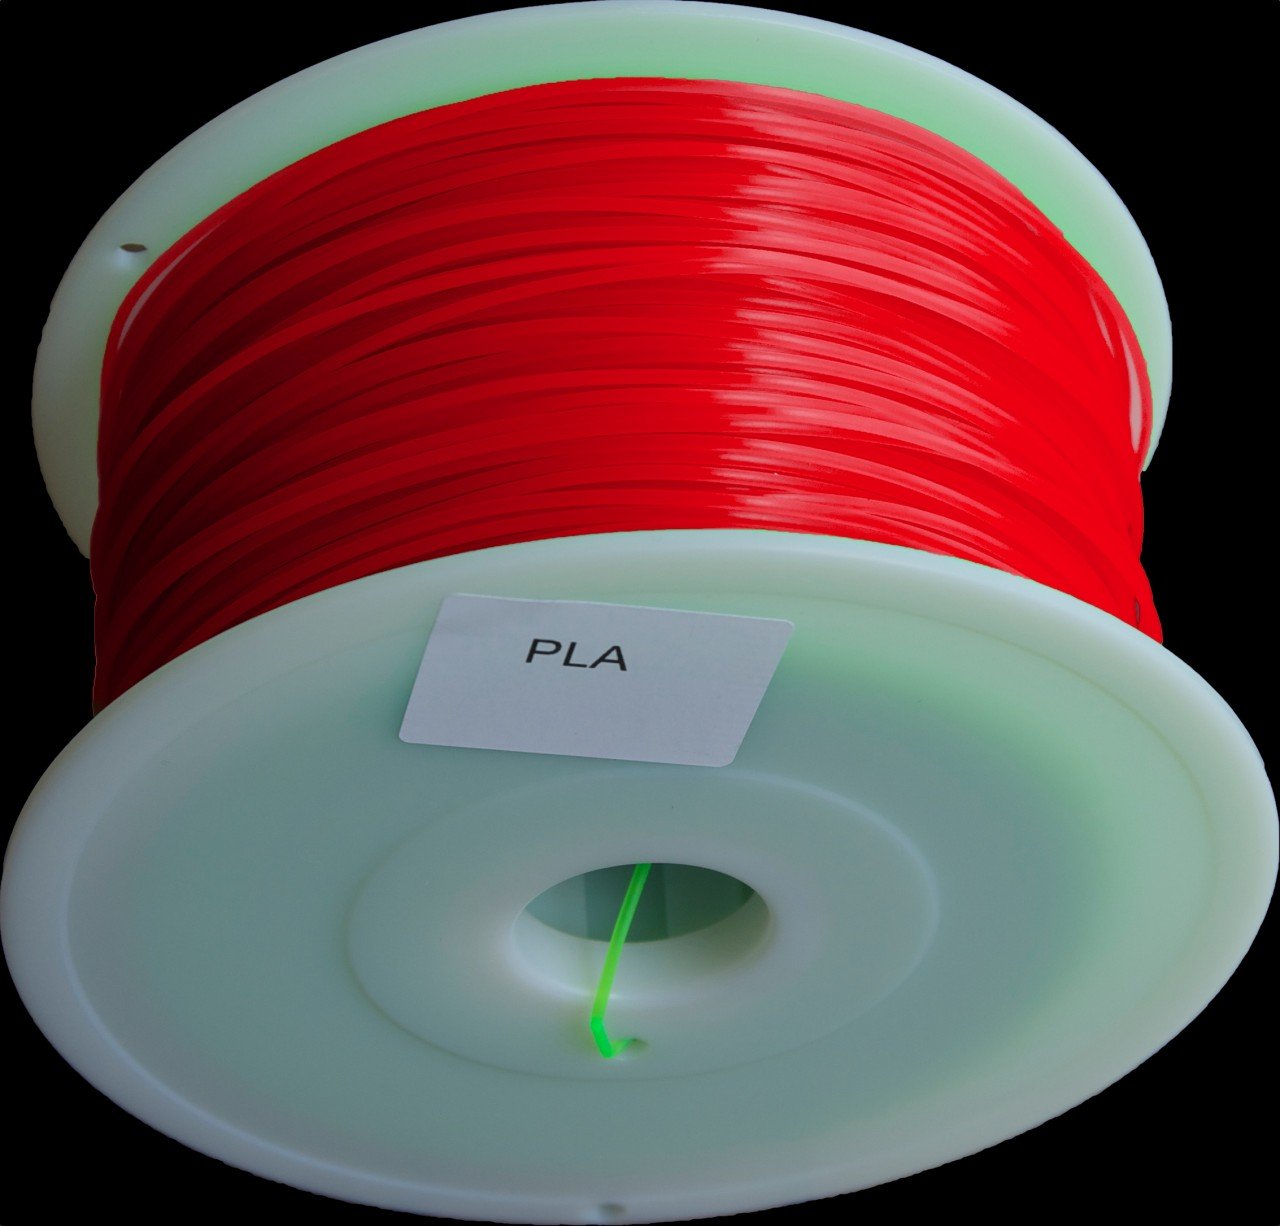 Filament PLA rouge translucide 3mm